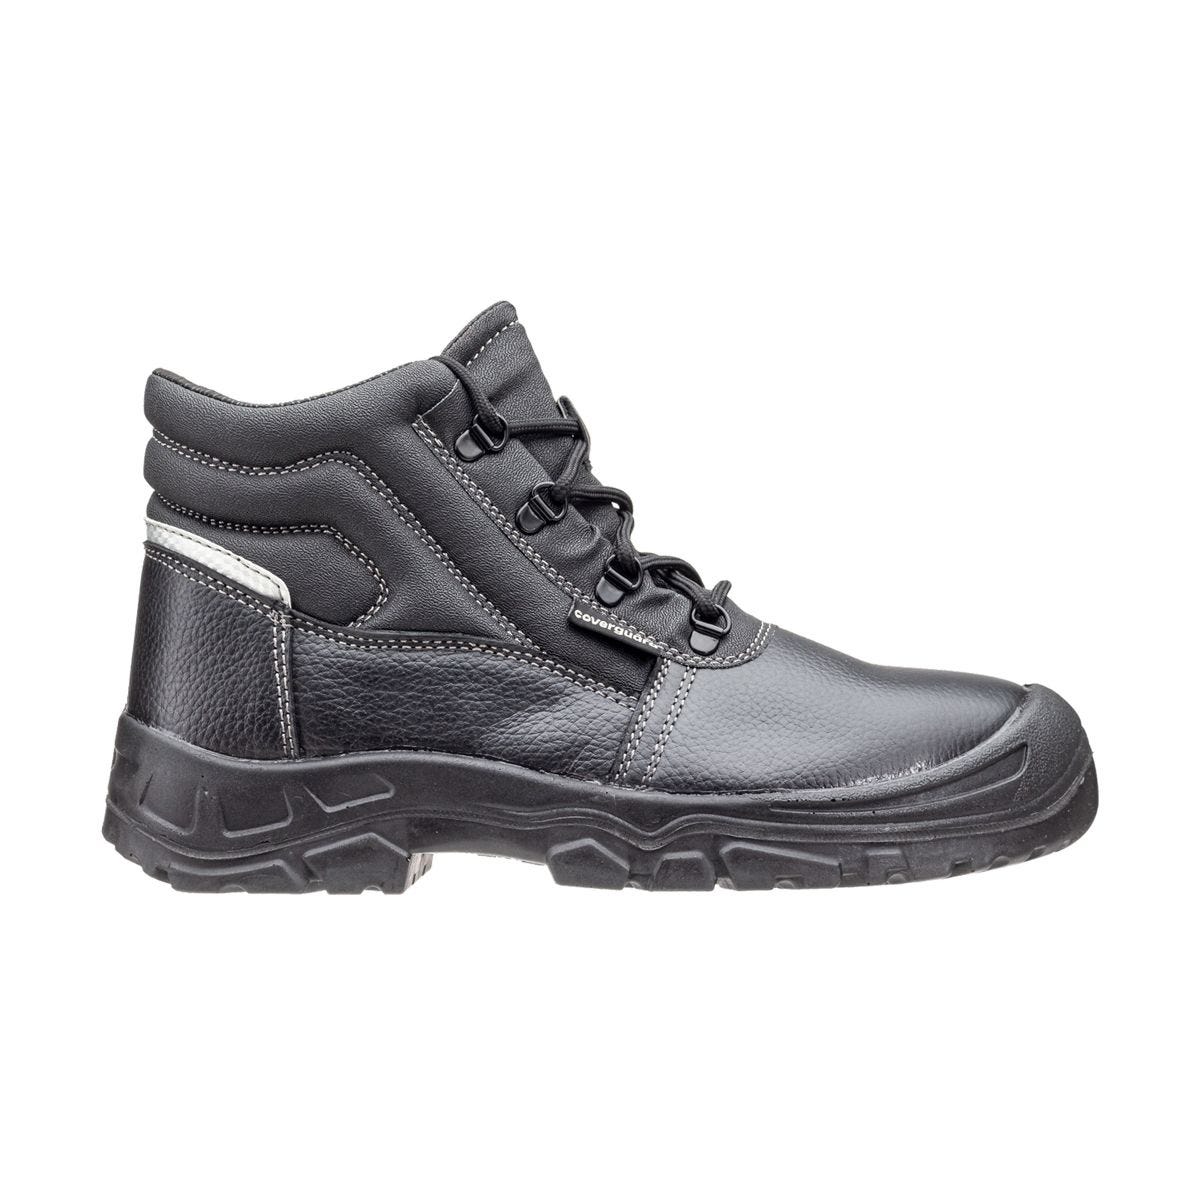 Chaussures de sécurité hautes Azurite II S3 ESD noir - Coverguard - Taille 44 1